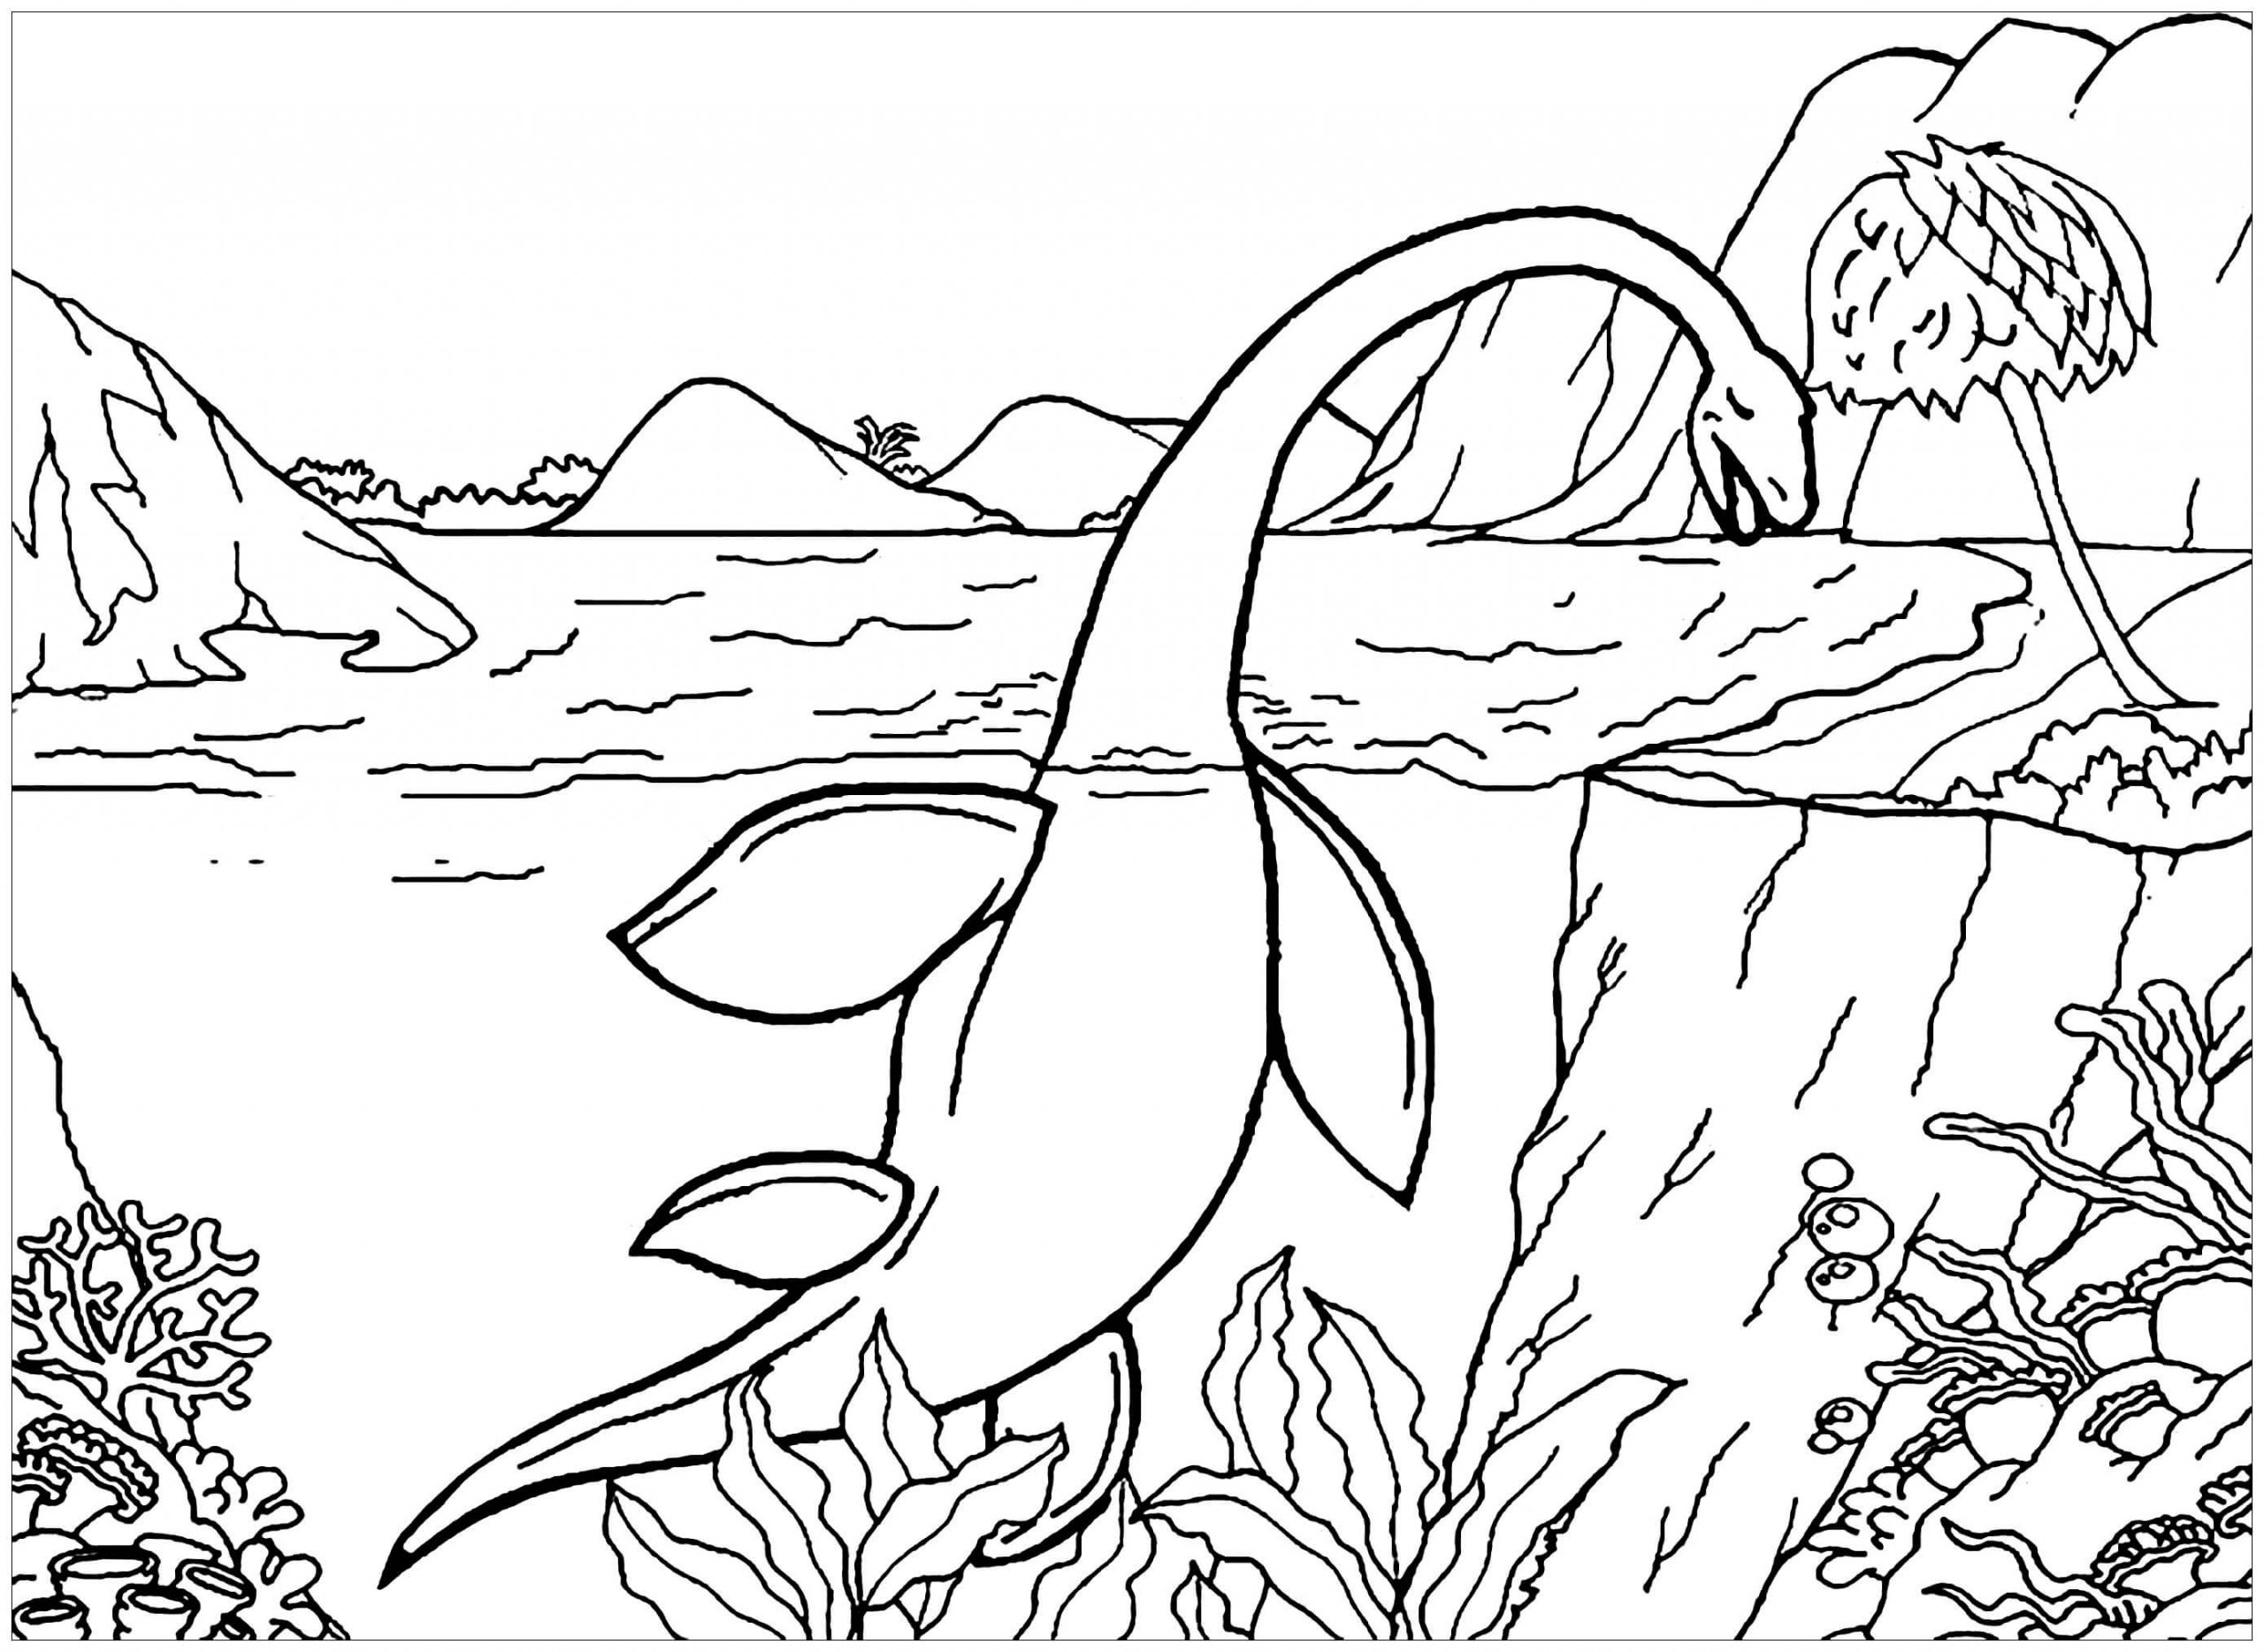 Plésiosaure coloring page